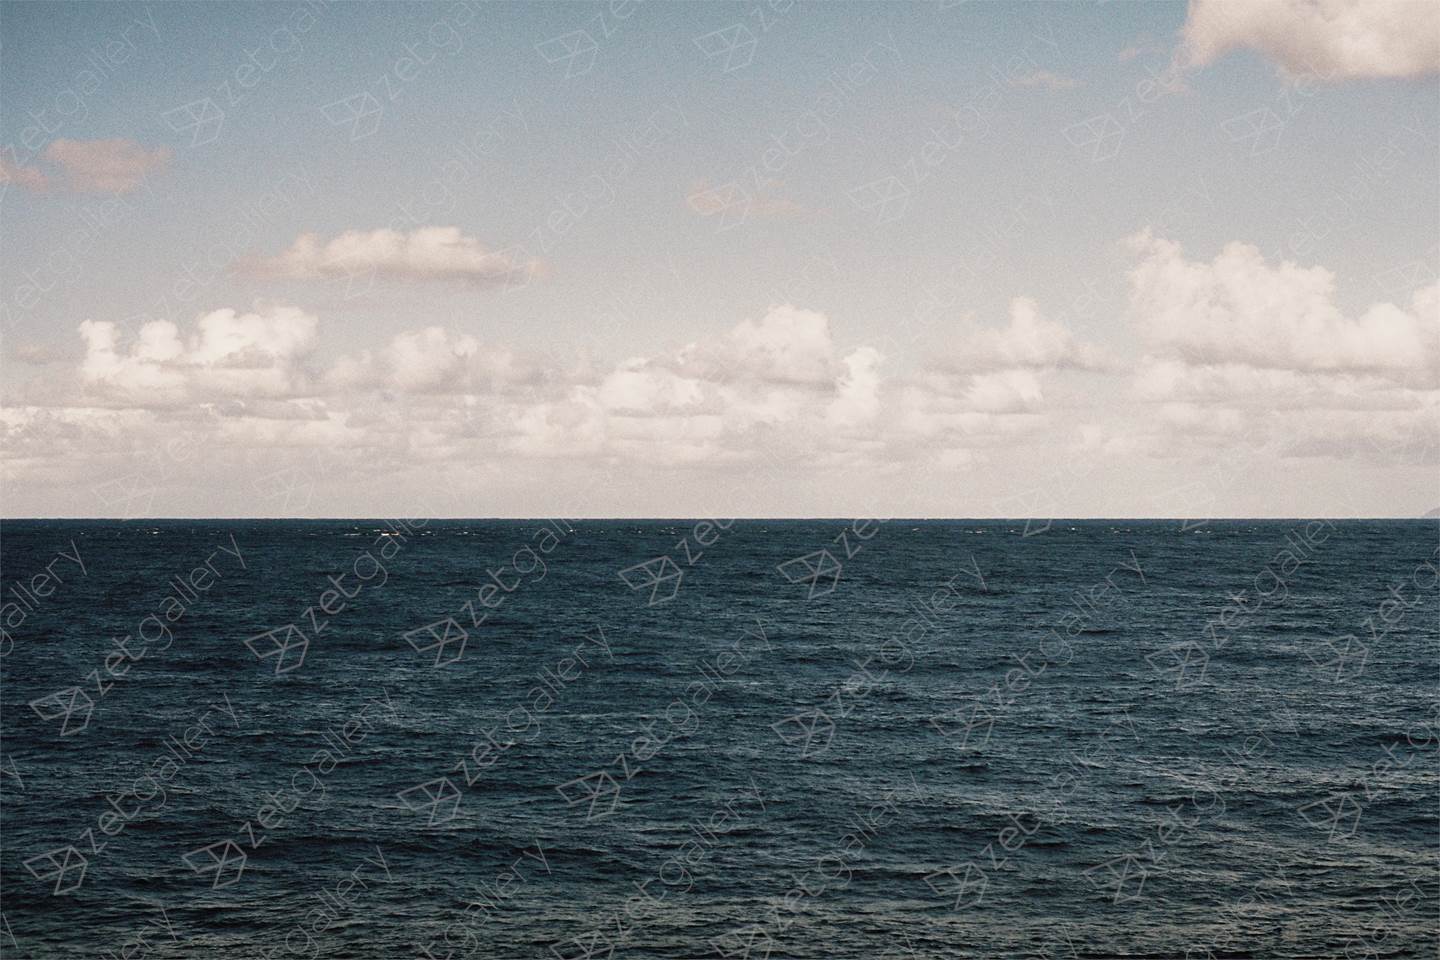 O horizonte / The horizon, original Geométrico Cosa análoga Fotografía de Miguel De